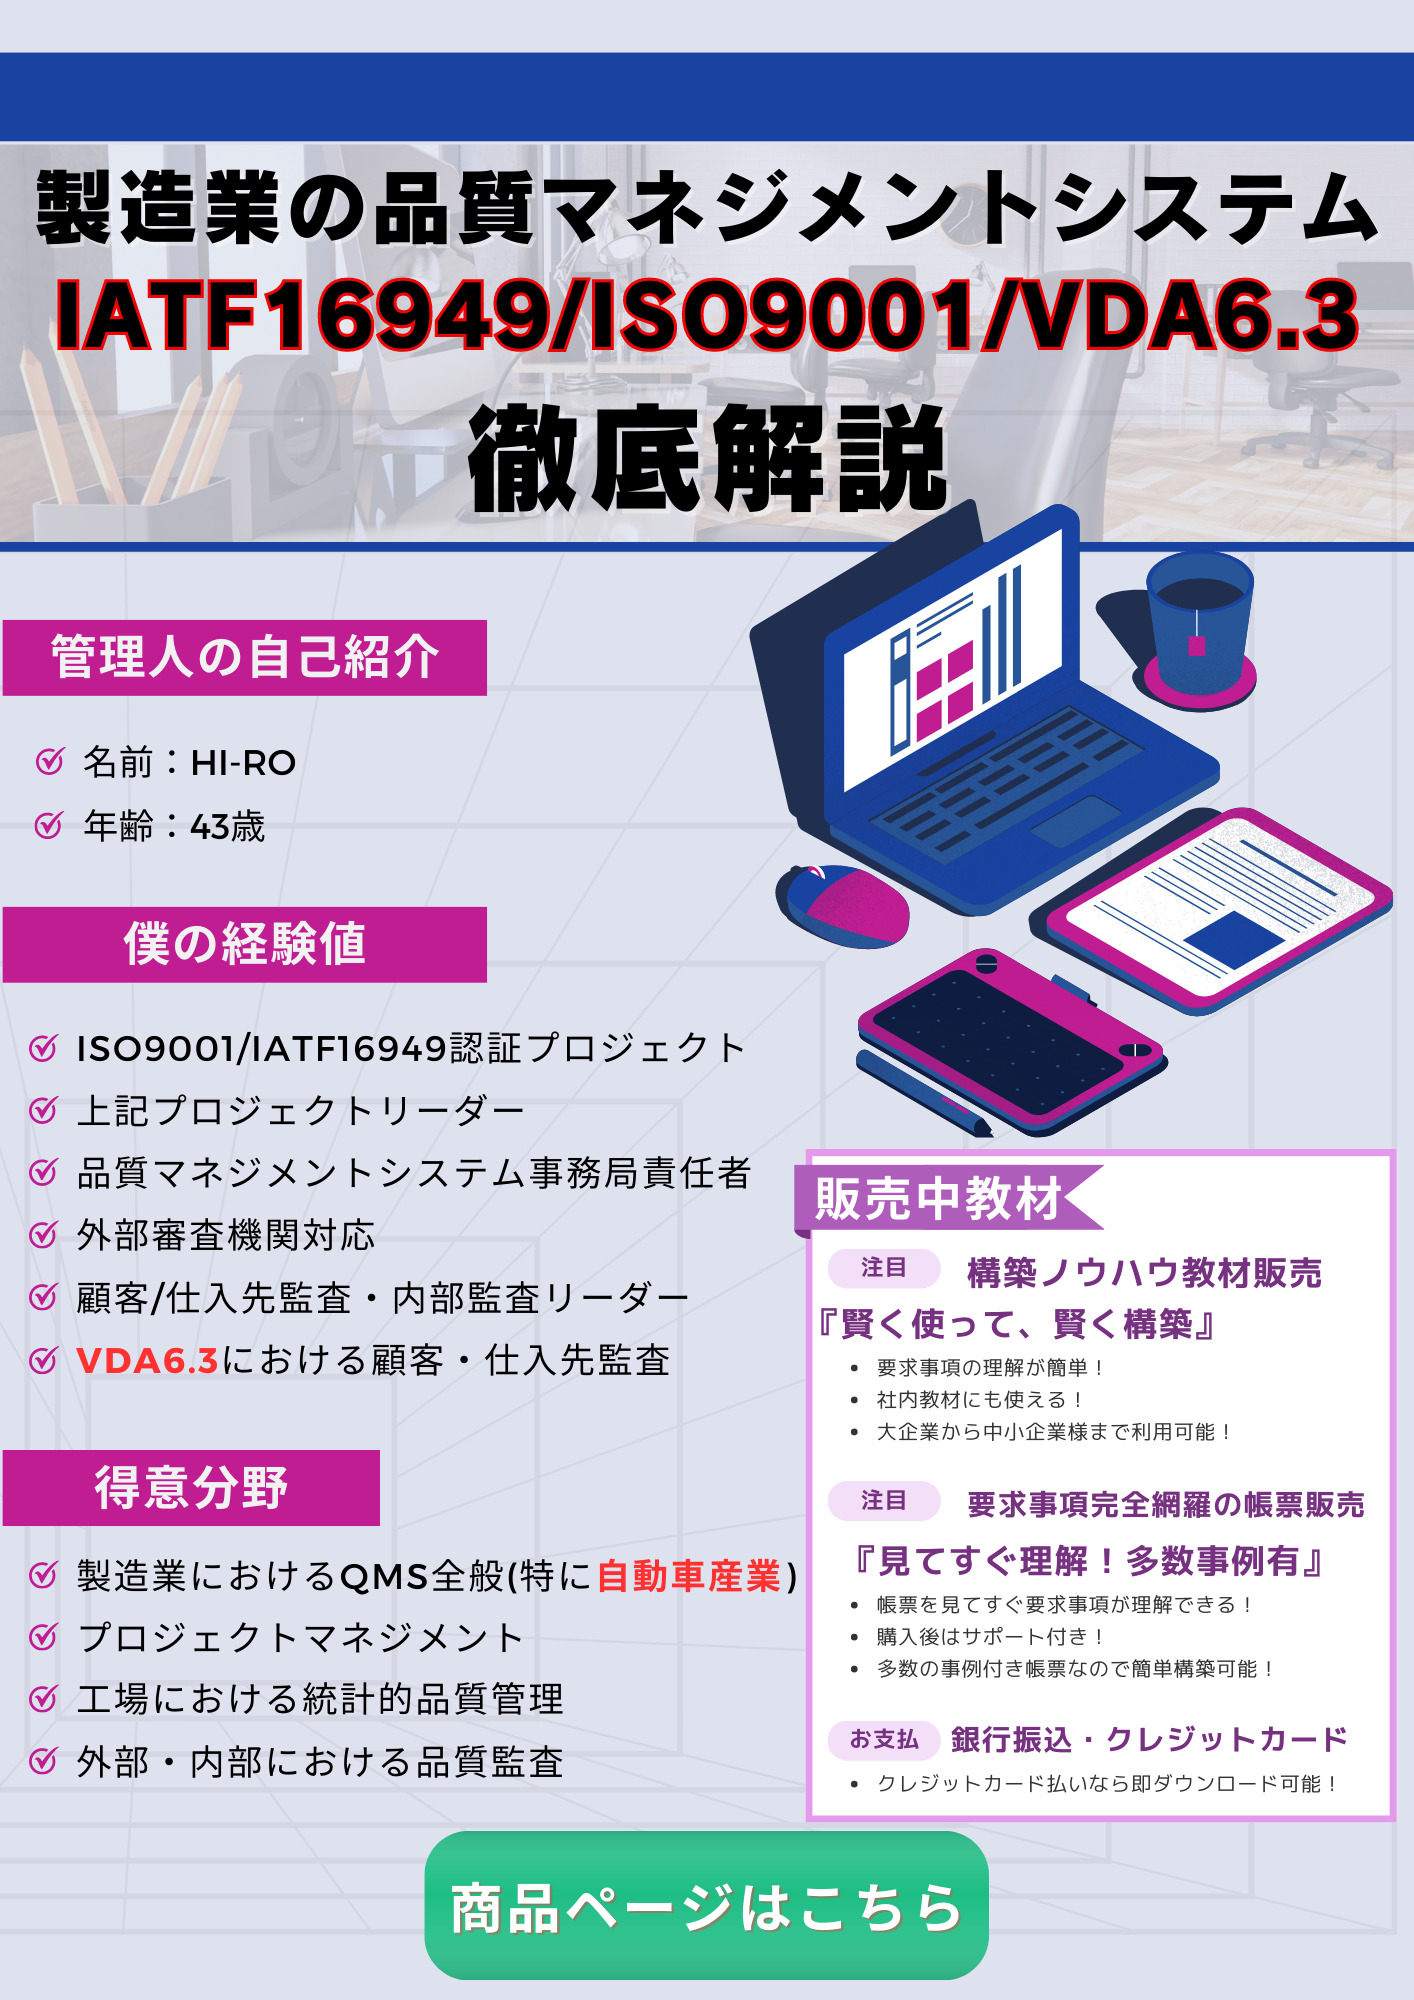 IATF16949/ISO9001/VDA6.3